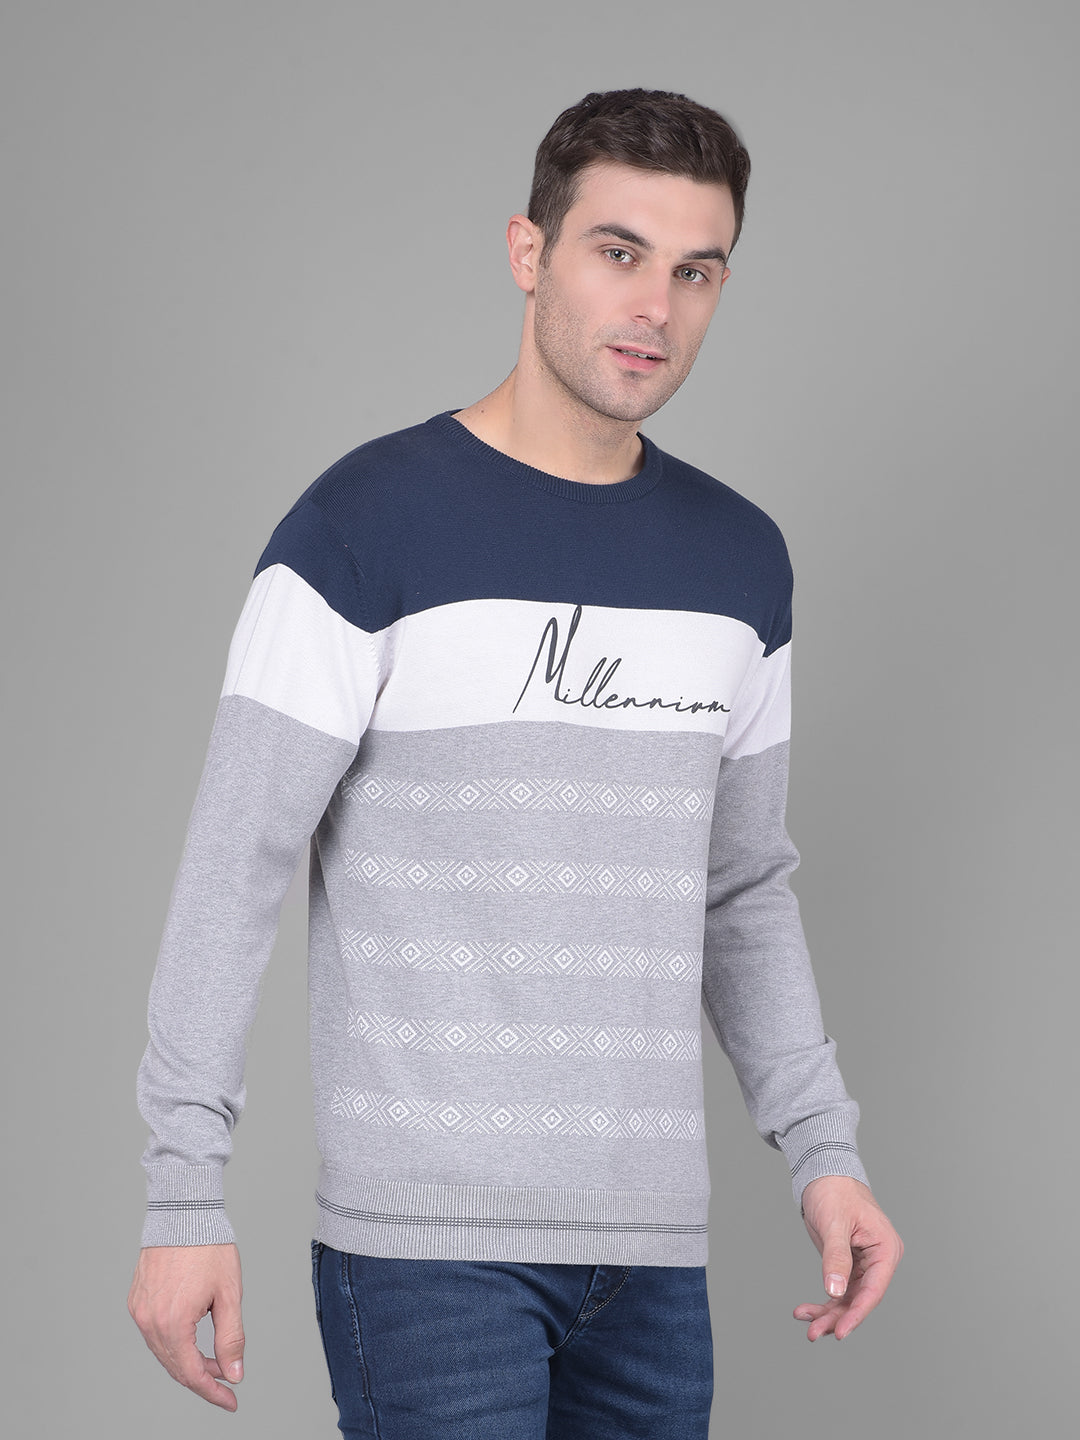 Navy Blue Colorblock Sweater-Men Sweaters-Crimsoune Club